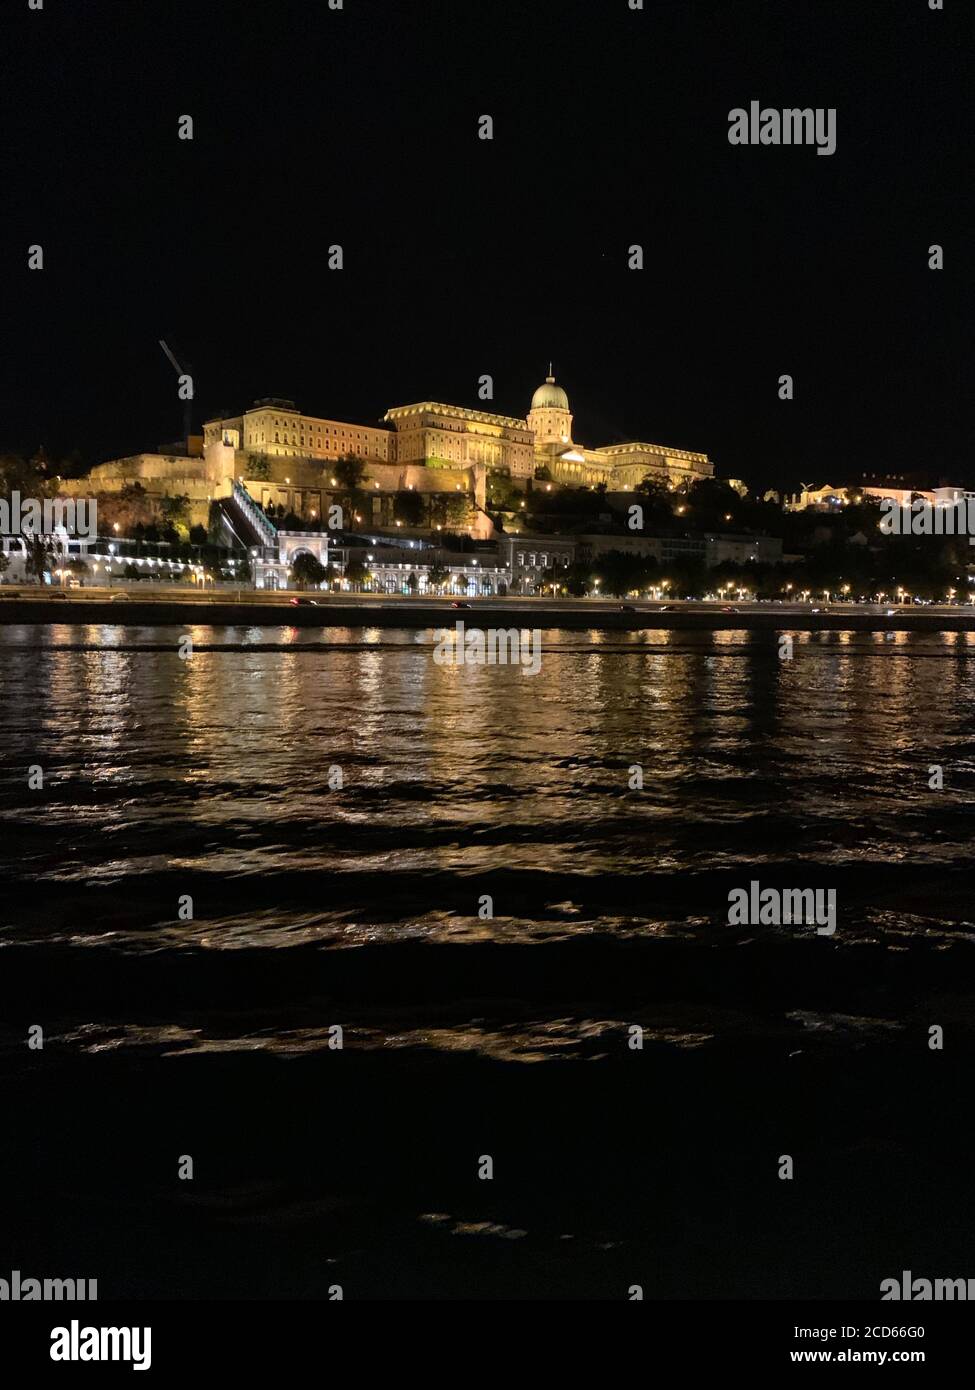 Castillo de Buda iluminado por la noche. Budapest / Hungría Foto de stock